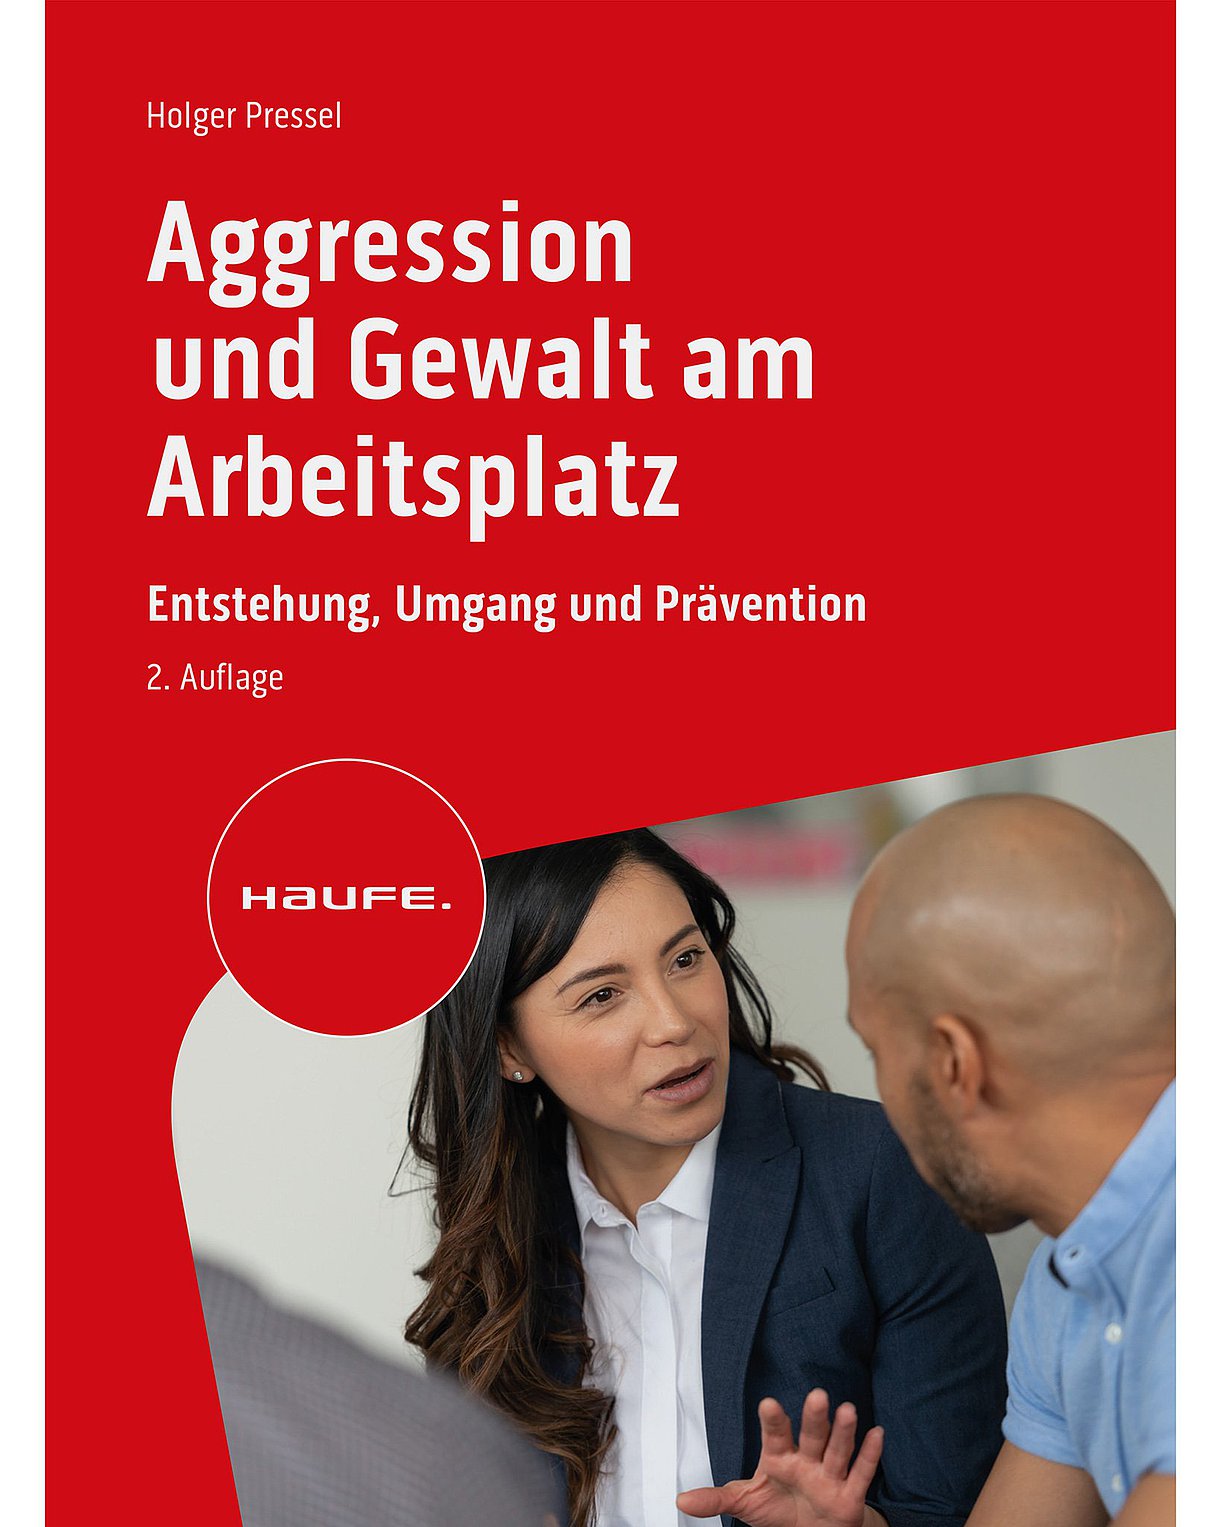 Foto: Buchtitel: Holger Pressel: Aggression und Gewalt am Arbeitsplatz.